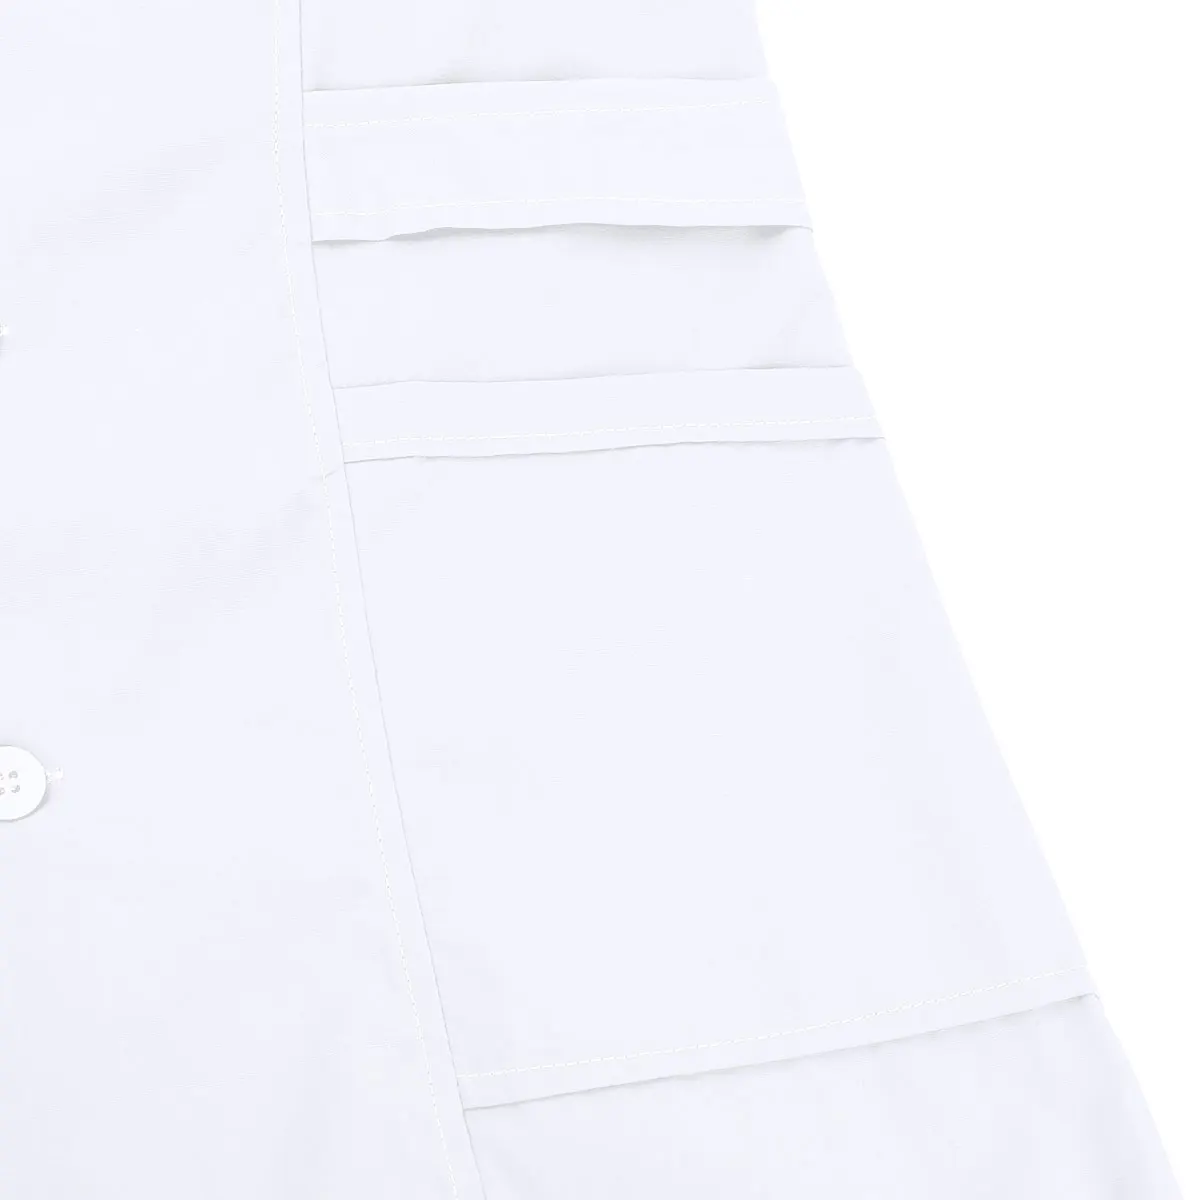 Iiniim для женщин и взрослых Униформа воротник с лацканами короткий рукав кнопка спереди сплошной цвет больница Медсестры скраб лабораторное пальто униформа платье